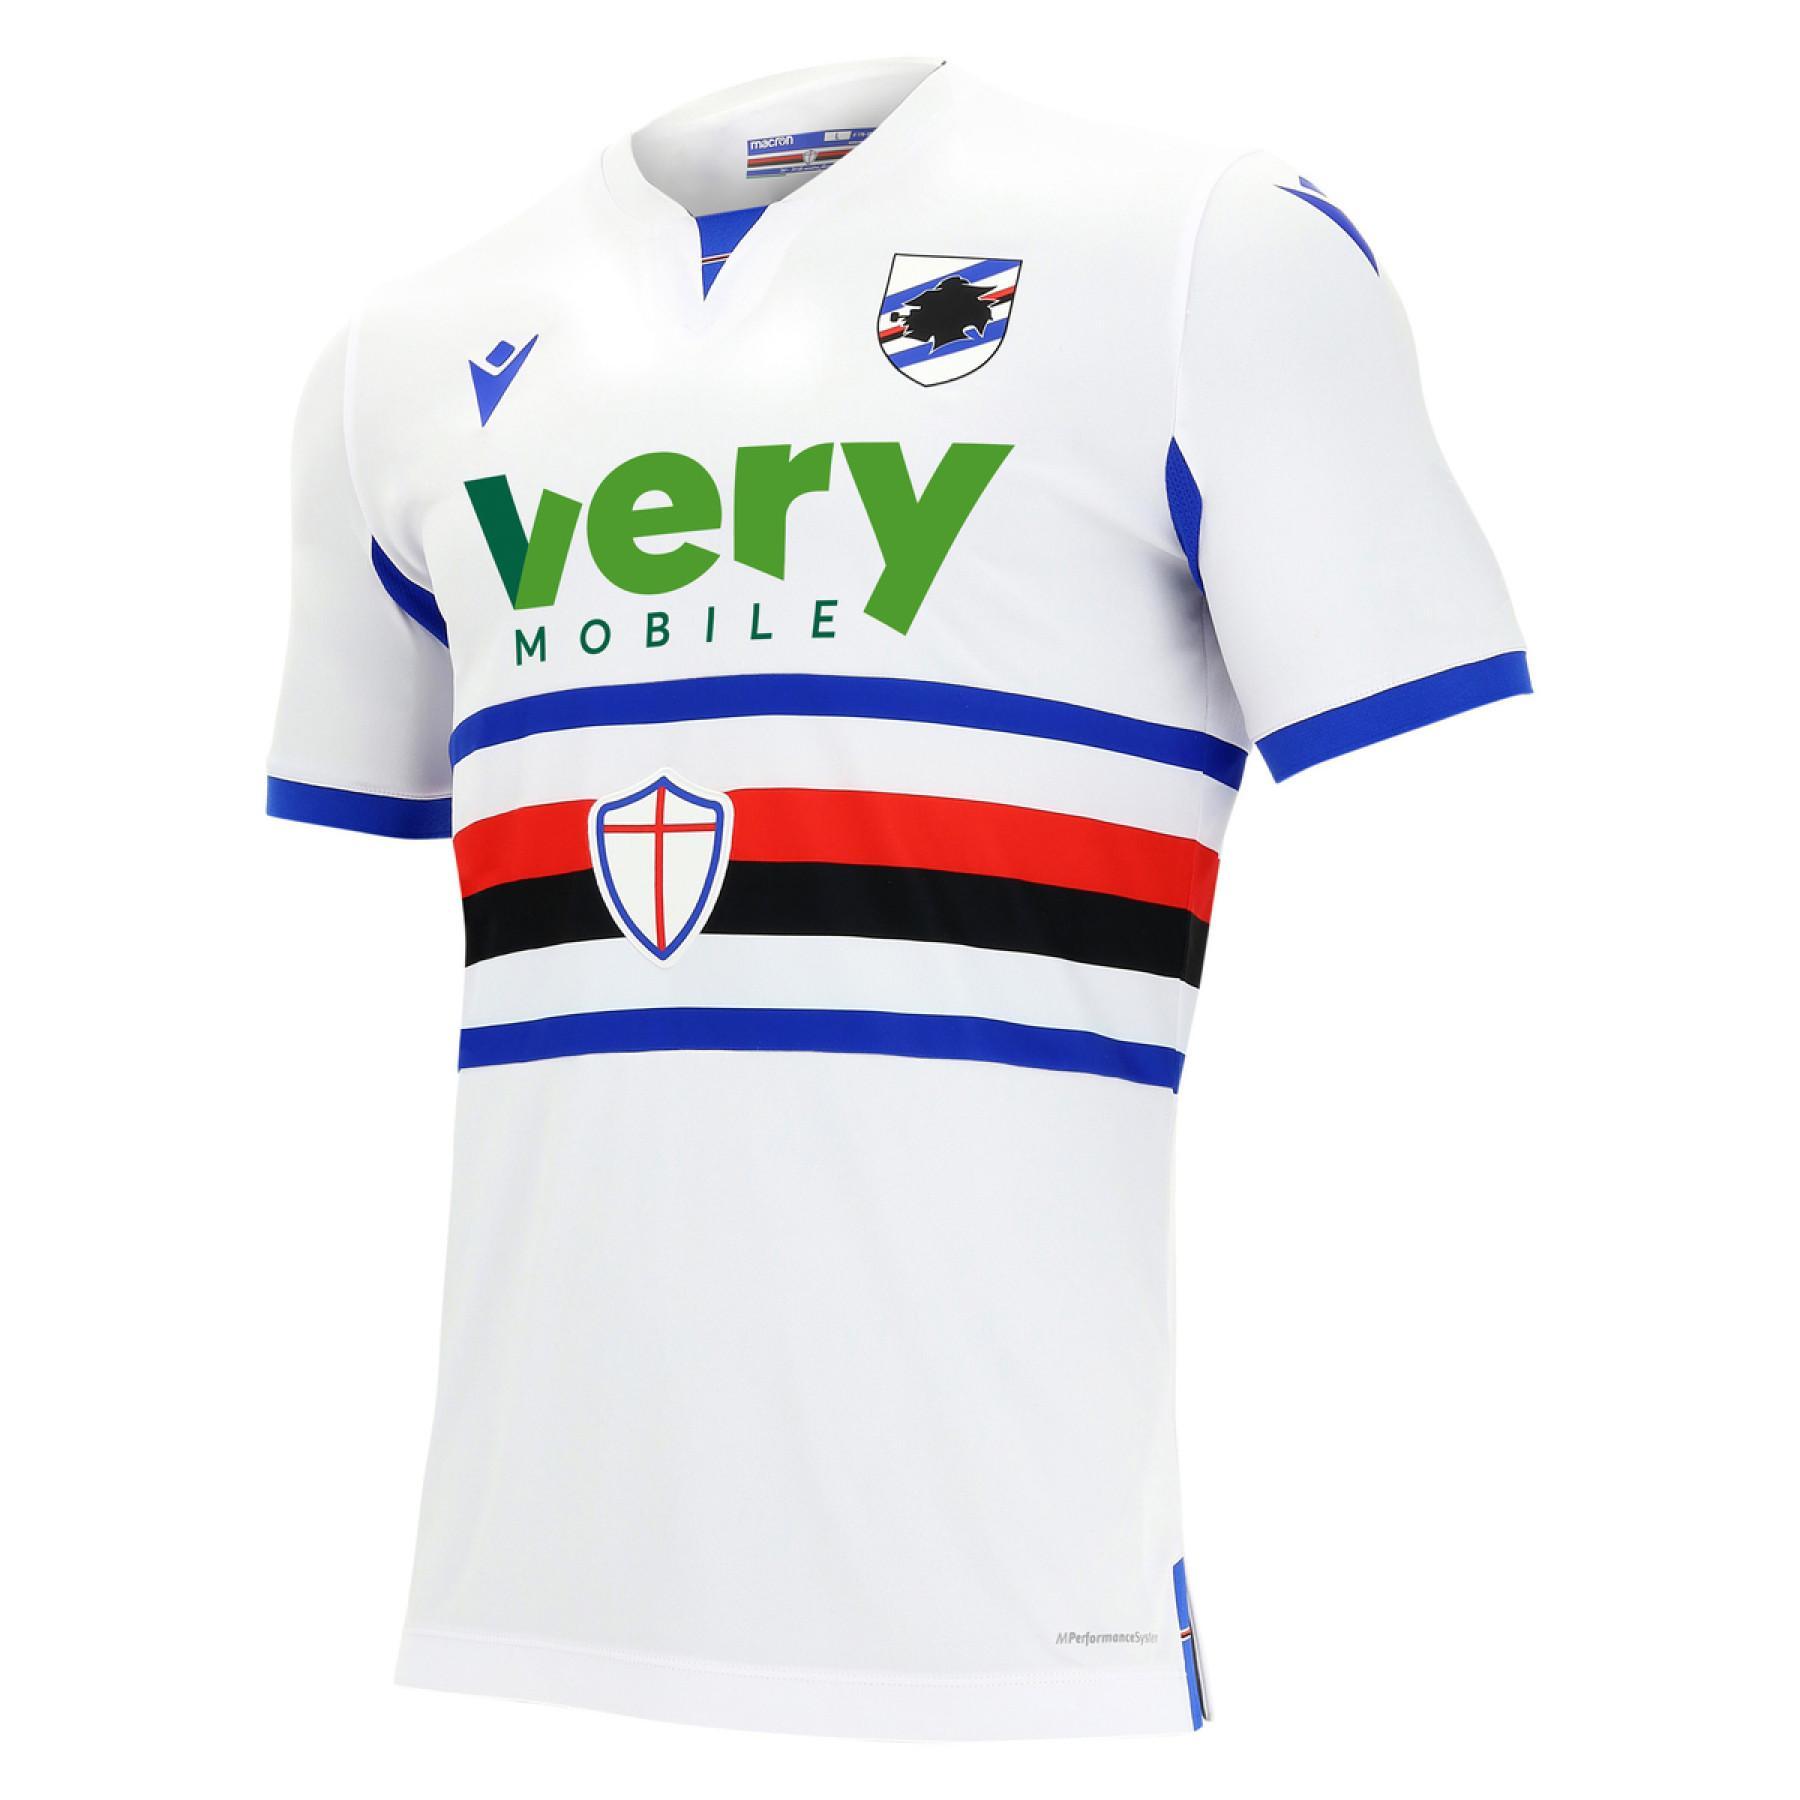 Away jersey UC Sampdoria 2020/21